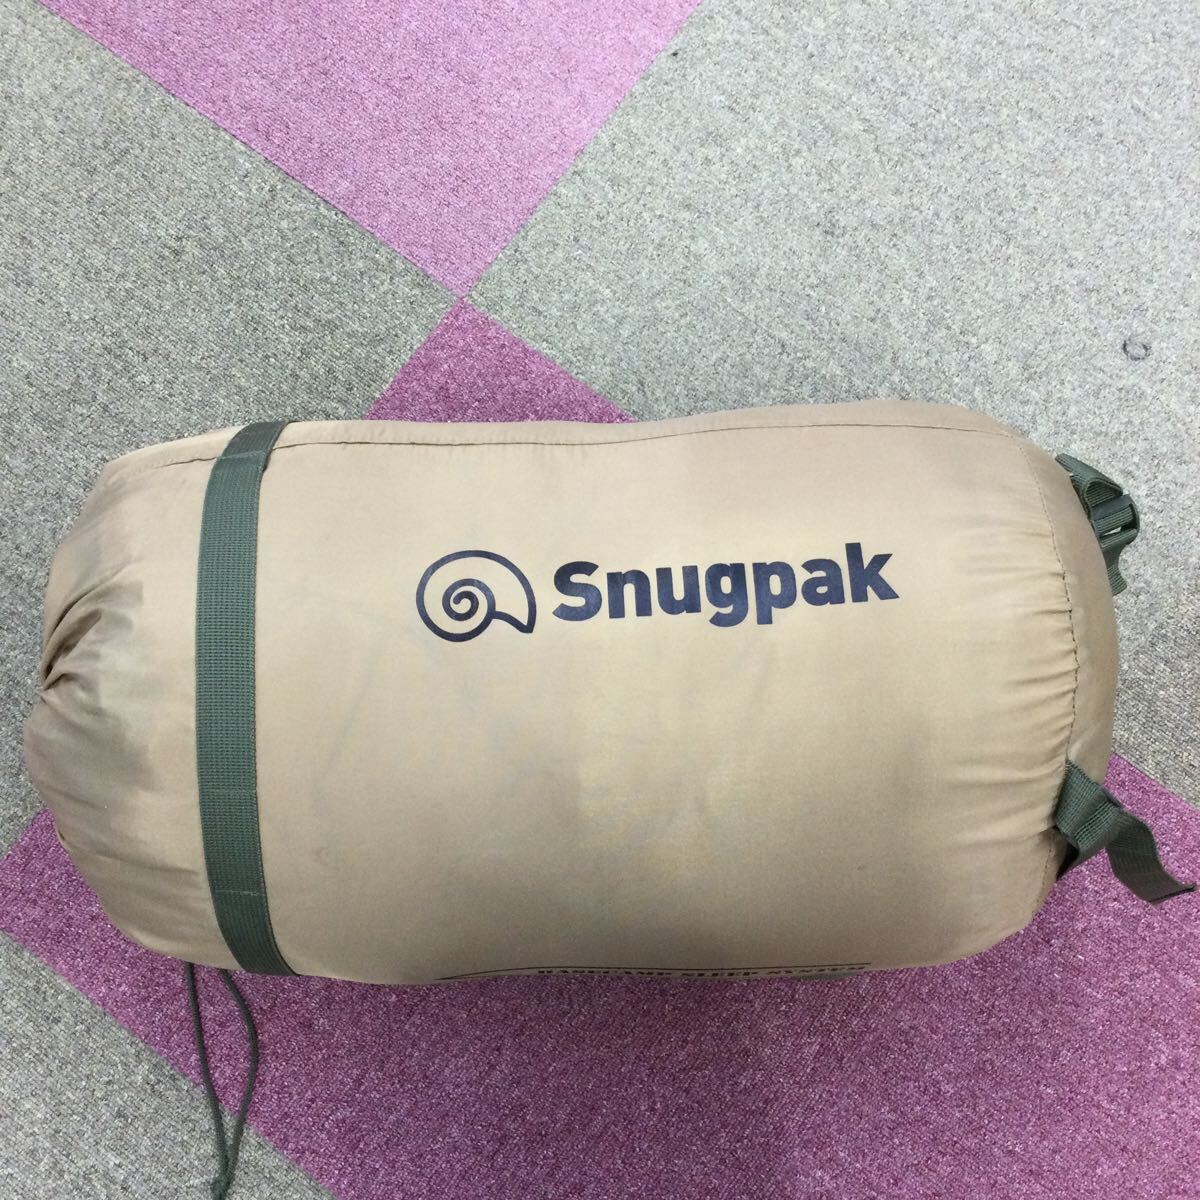 ◎【Snugpak/スナグパック】BASECAMP SLEEP SYSTEM 寝袋 マット テント アウトドア キャンプ用品 キャンプ ベージュ カーキの画像4